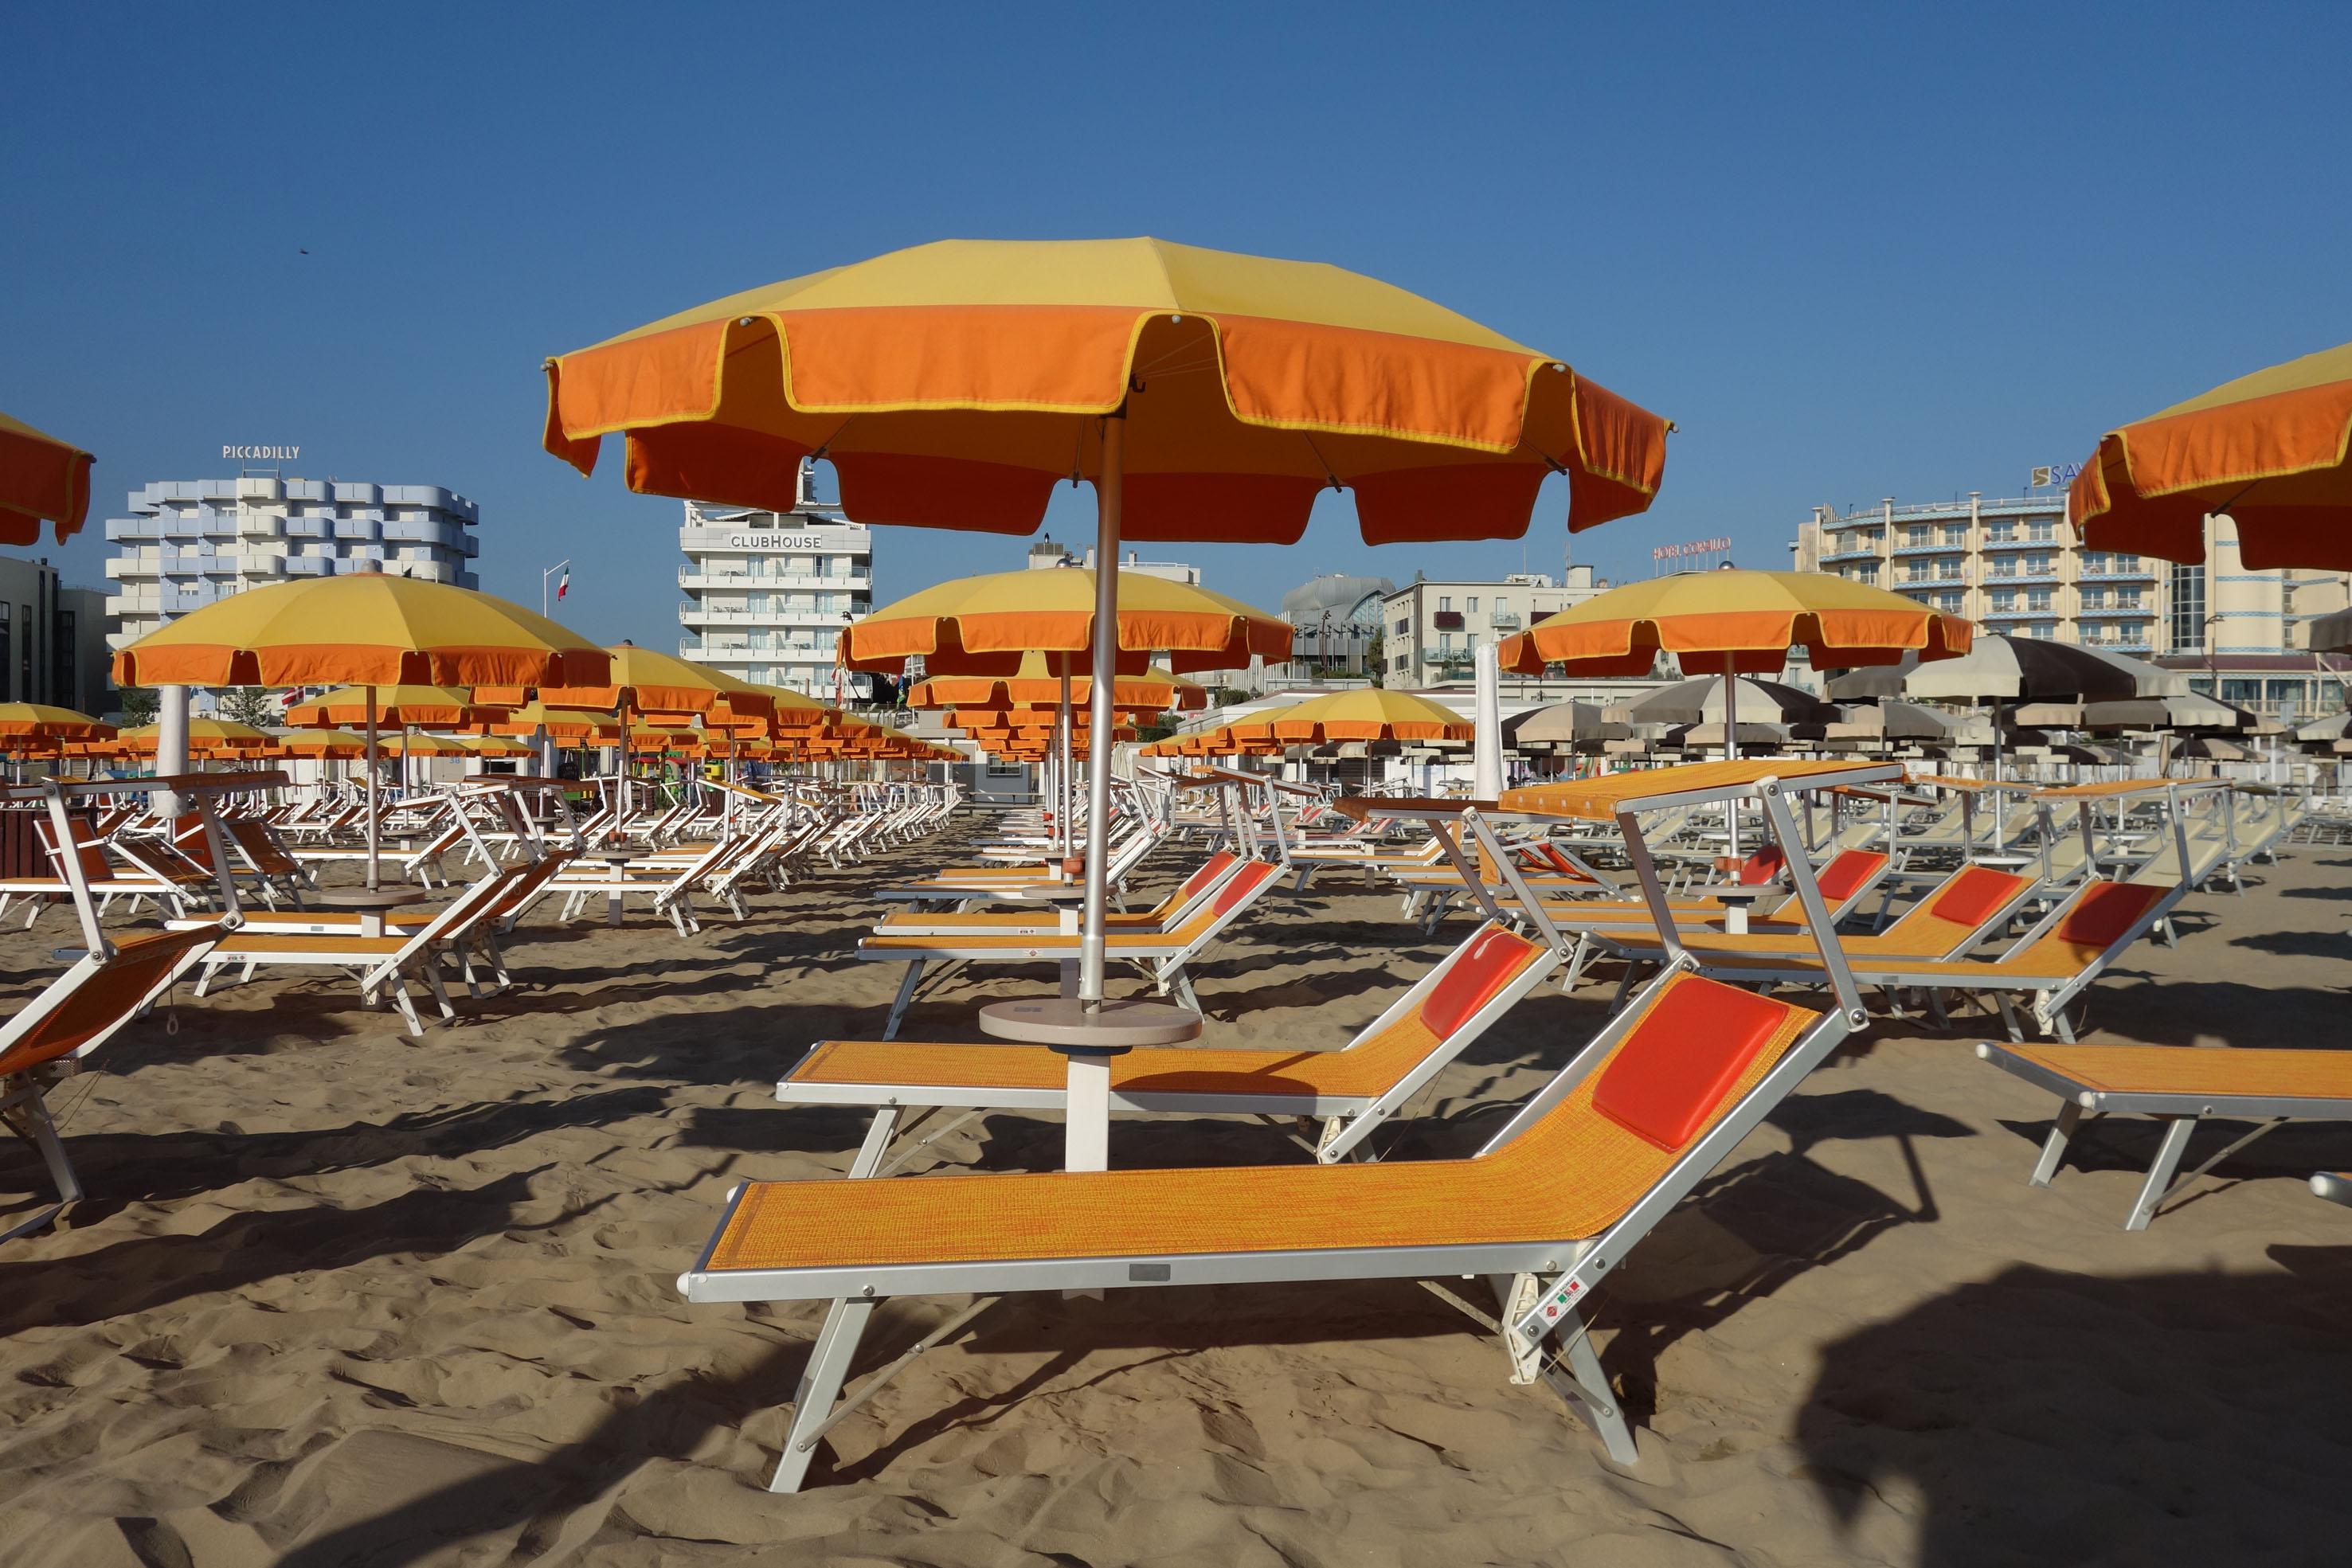 Spiagge - 228 euro in media alla settimana per ombrellone e lettini